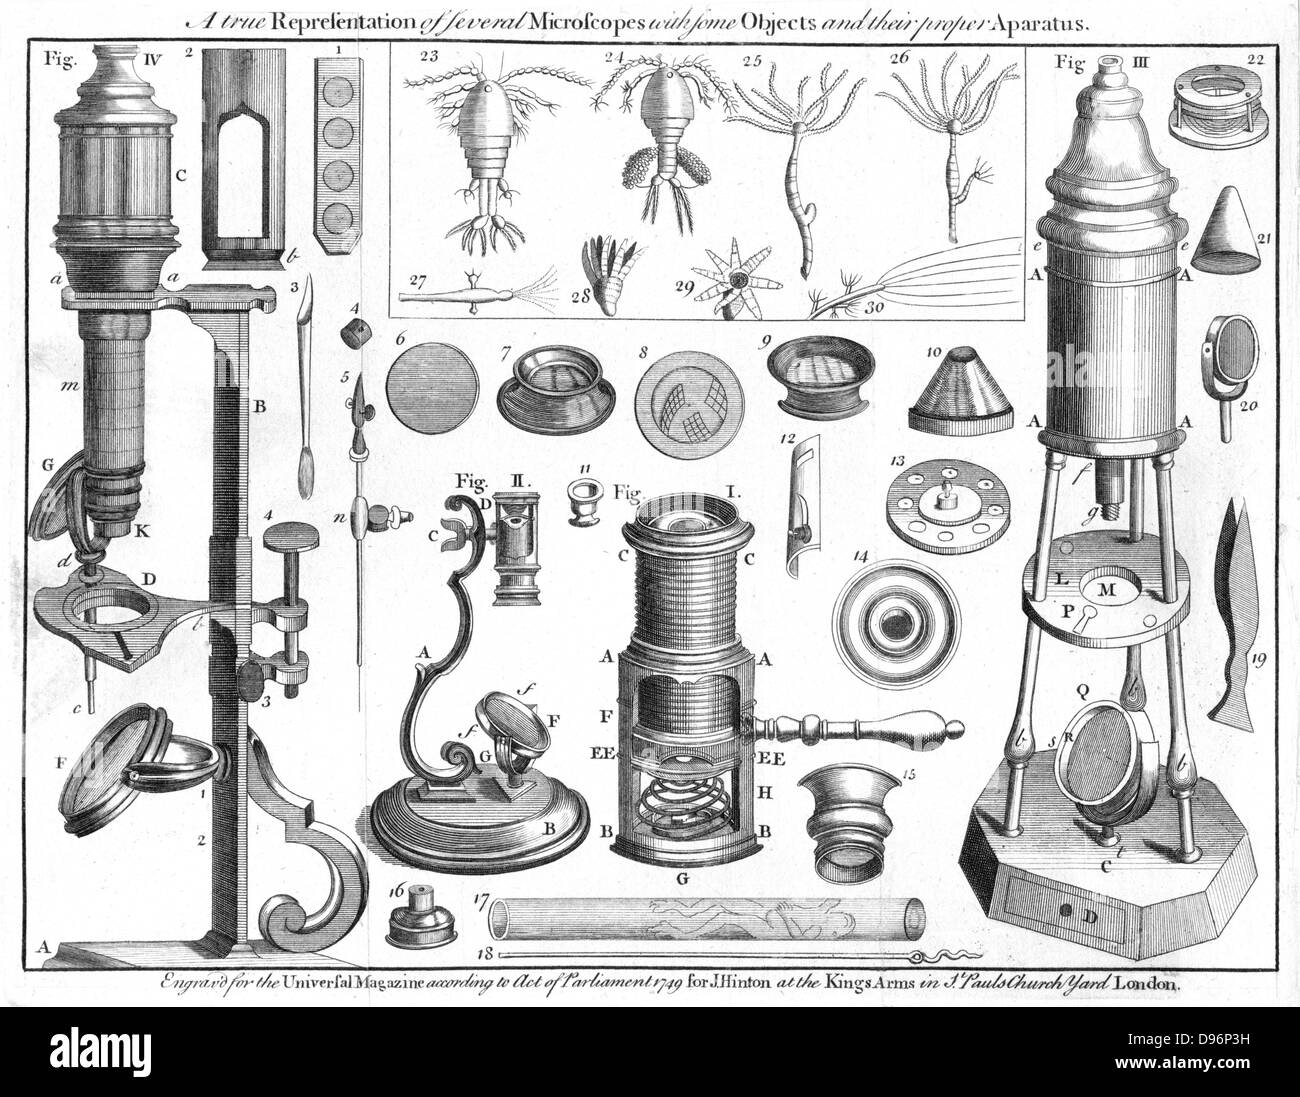 Mikroskope und mikroskopische Objekte, 1750. I: Wilson's pocket Mikroskop. II: Blättern Mikroskop. III: Stativ Mikroskop - verbesserte Form der doppelten Marshall's Mikroskop. IV: Ascough des zusammengesetzten Mikroskop. Abb. 23/30: Darstellungen von animalcules unter dem Mikroskop in Proben von graben Wasser entdeckt und in den Philosophischen Transaktionen Royal Society'' Nr. 283 beschrieben. Von der "universellen Magazin", (London, 1750). Stockfoto